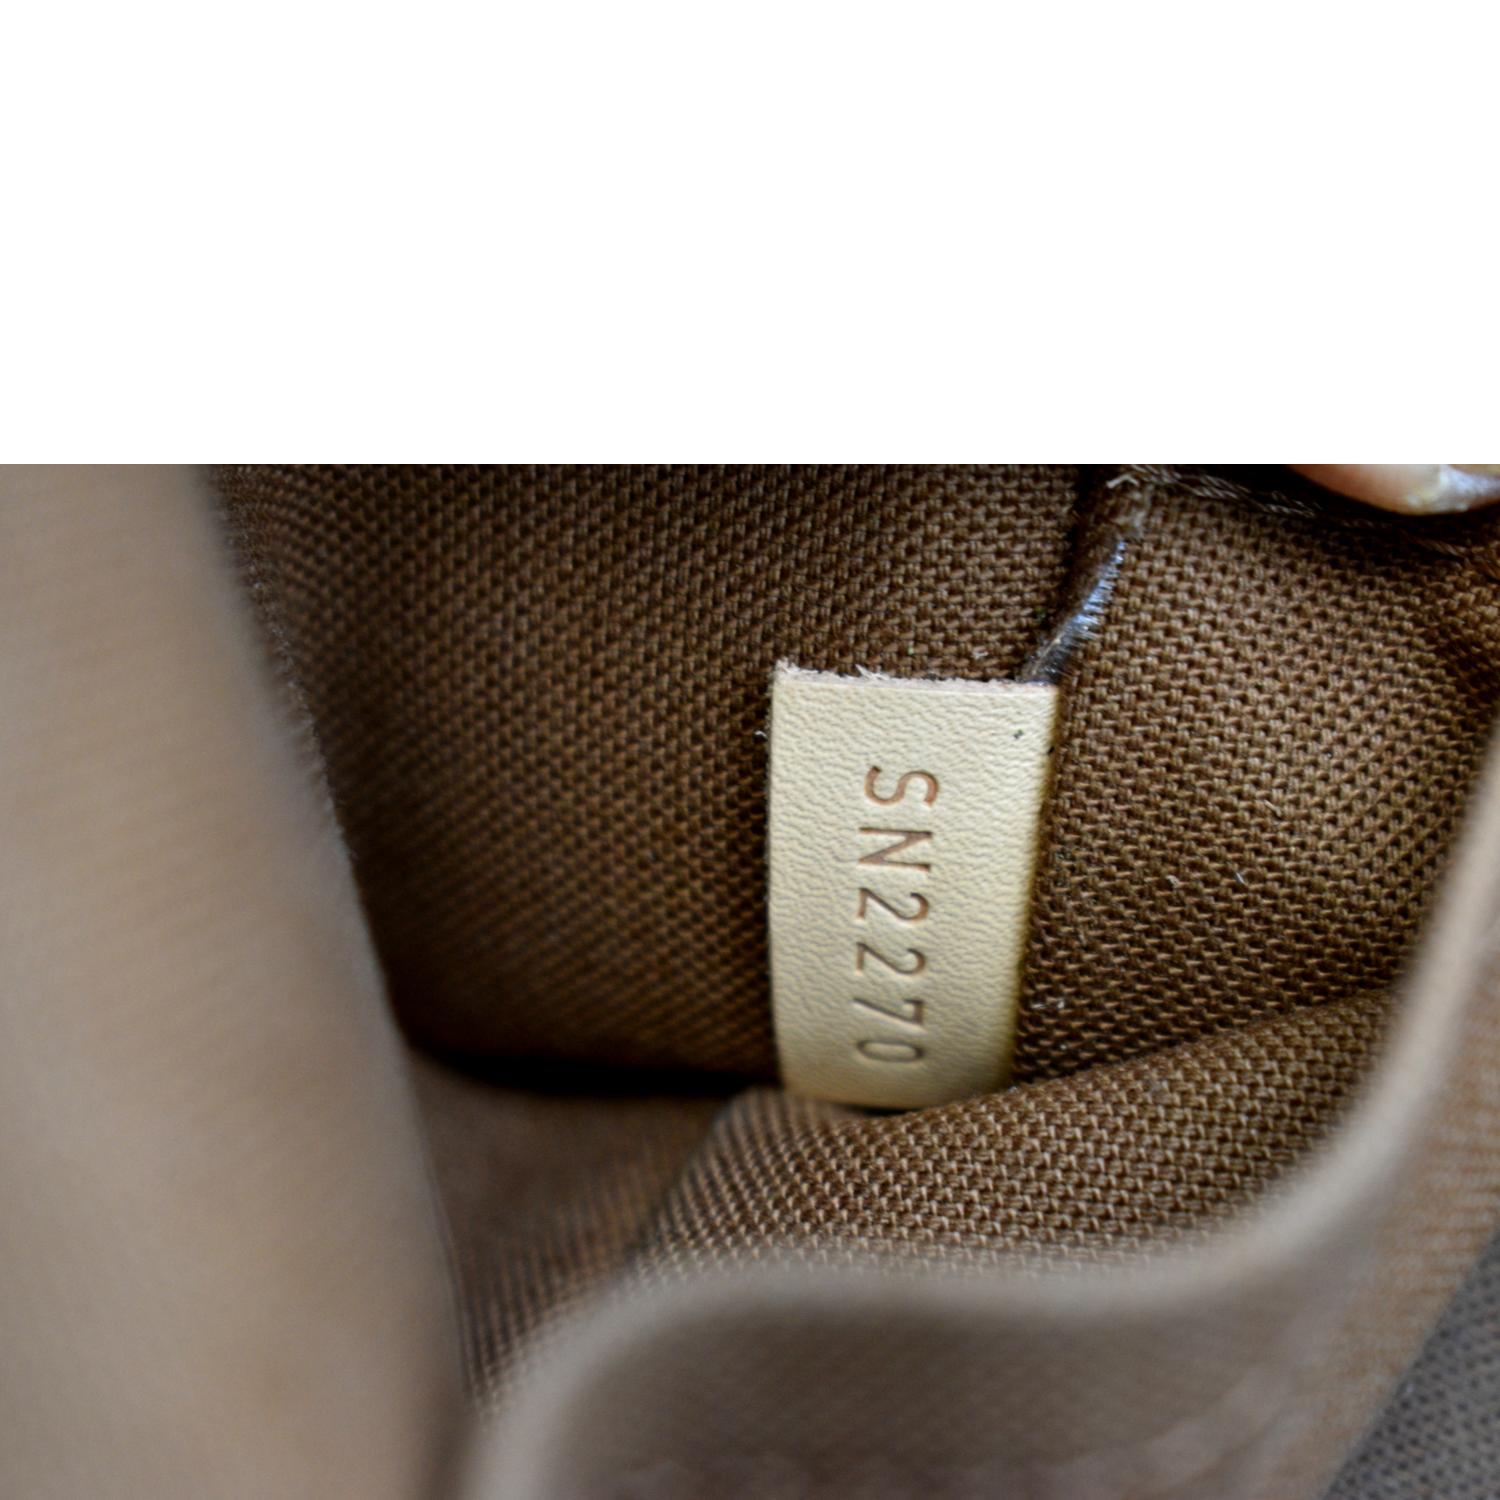 Alma bb cloth handbag Louis Vuitton Brown in Cloth - 19559384